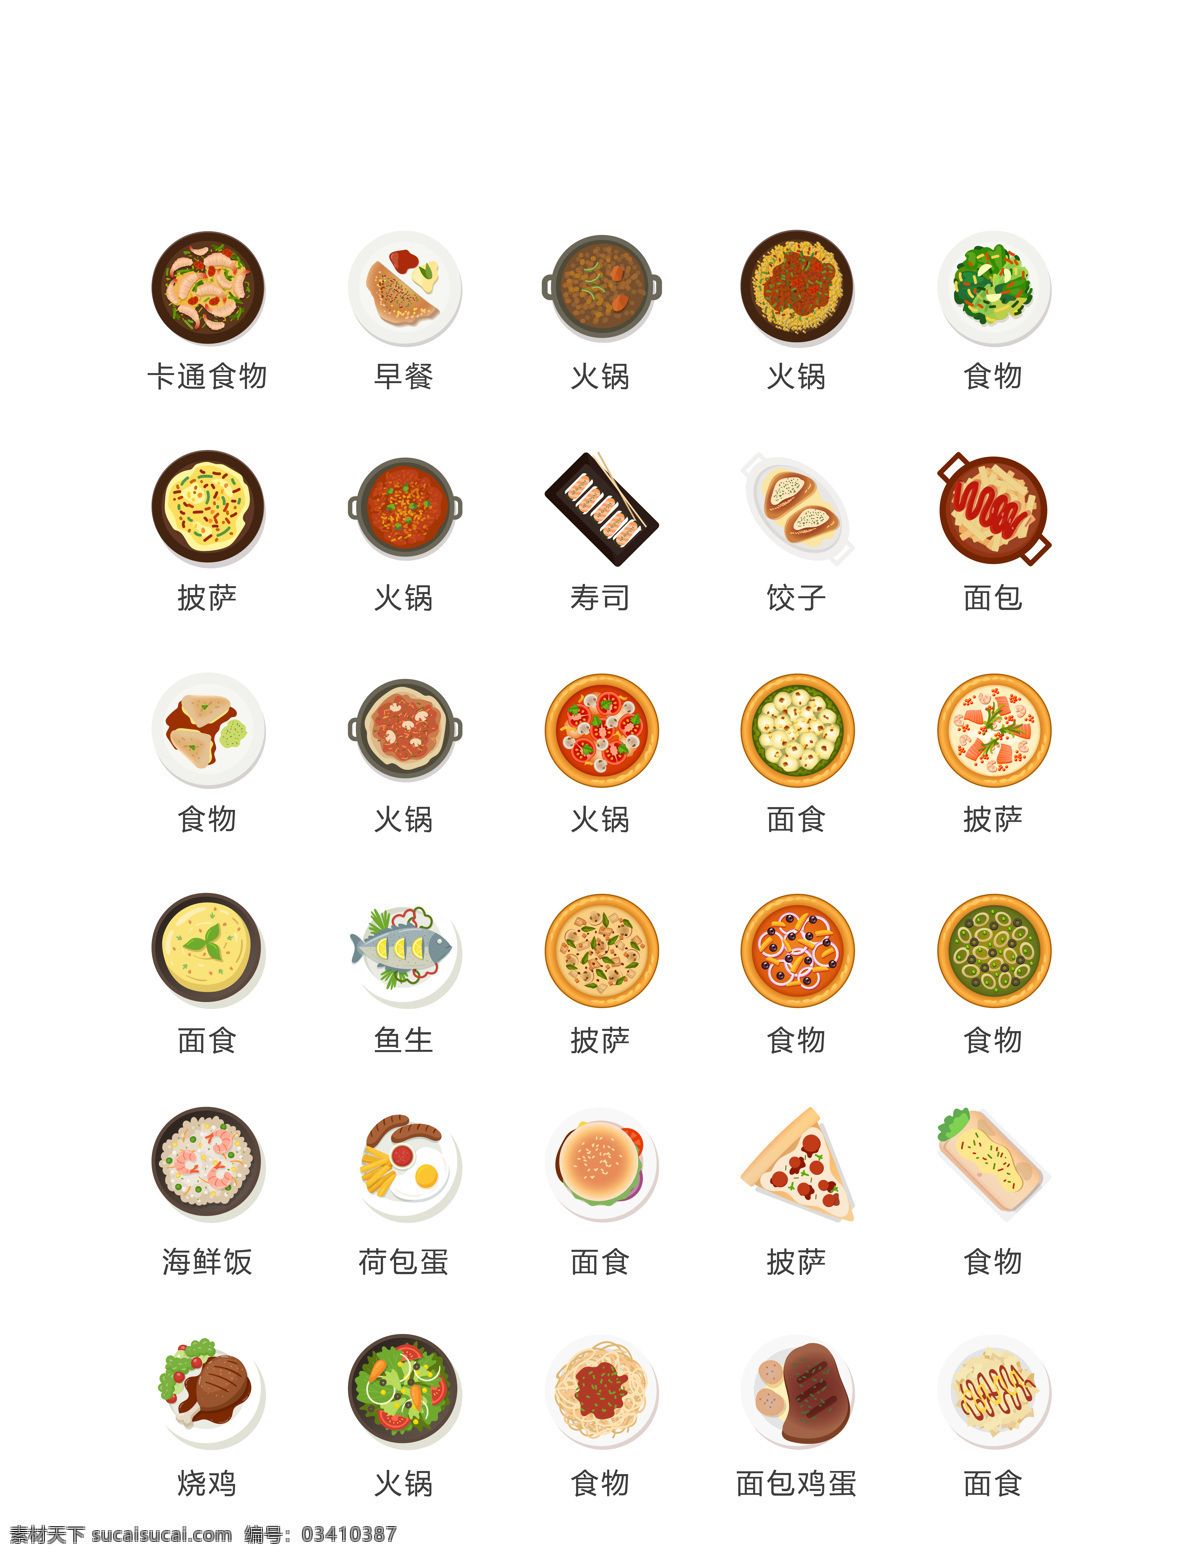 餐饮 app 按钮 餐饮类图标 小程序图标 图标 开发设计分类 菜单设计 标志图标 其他图标